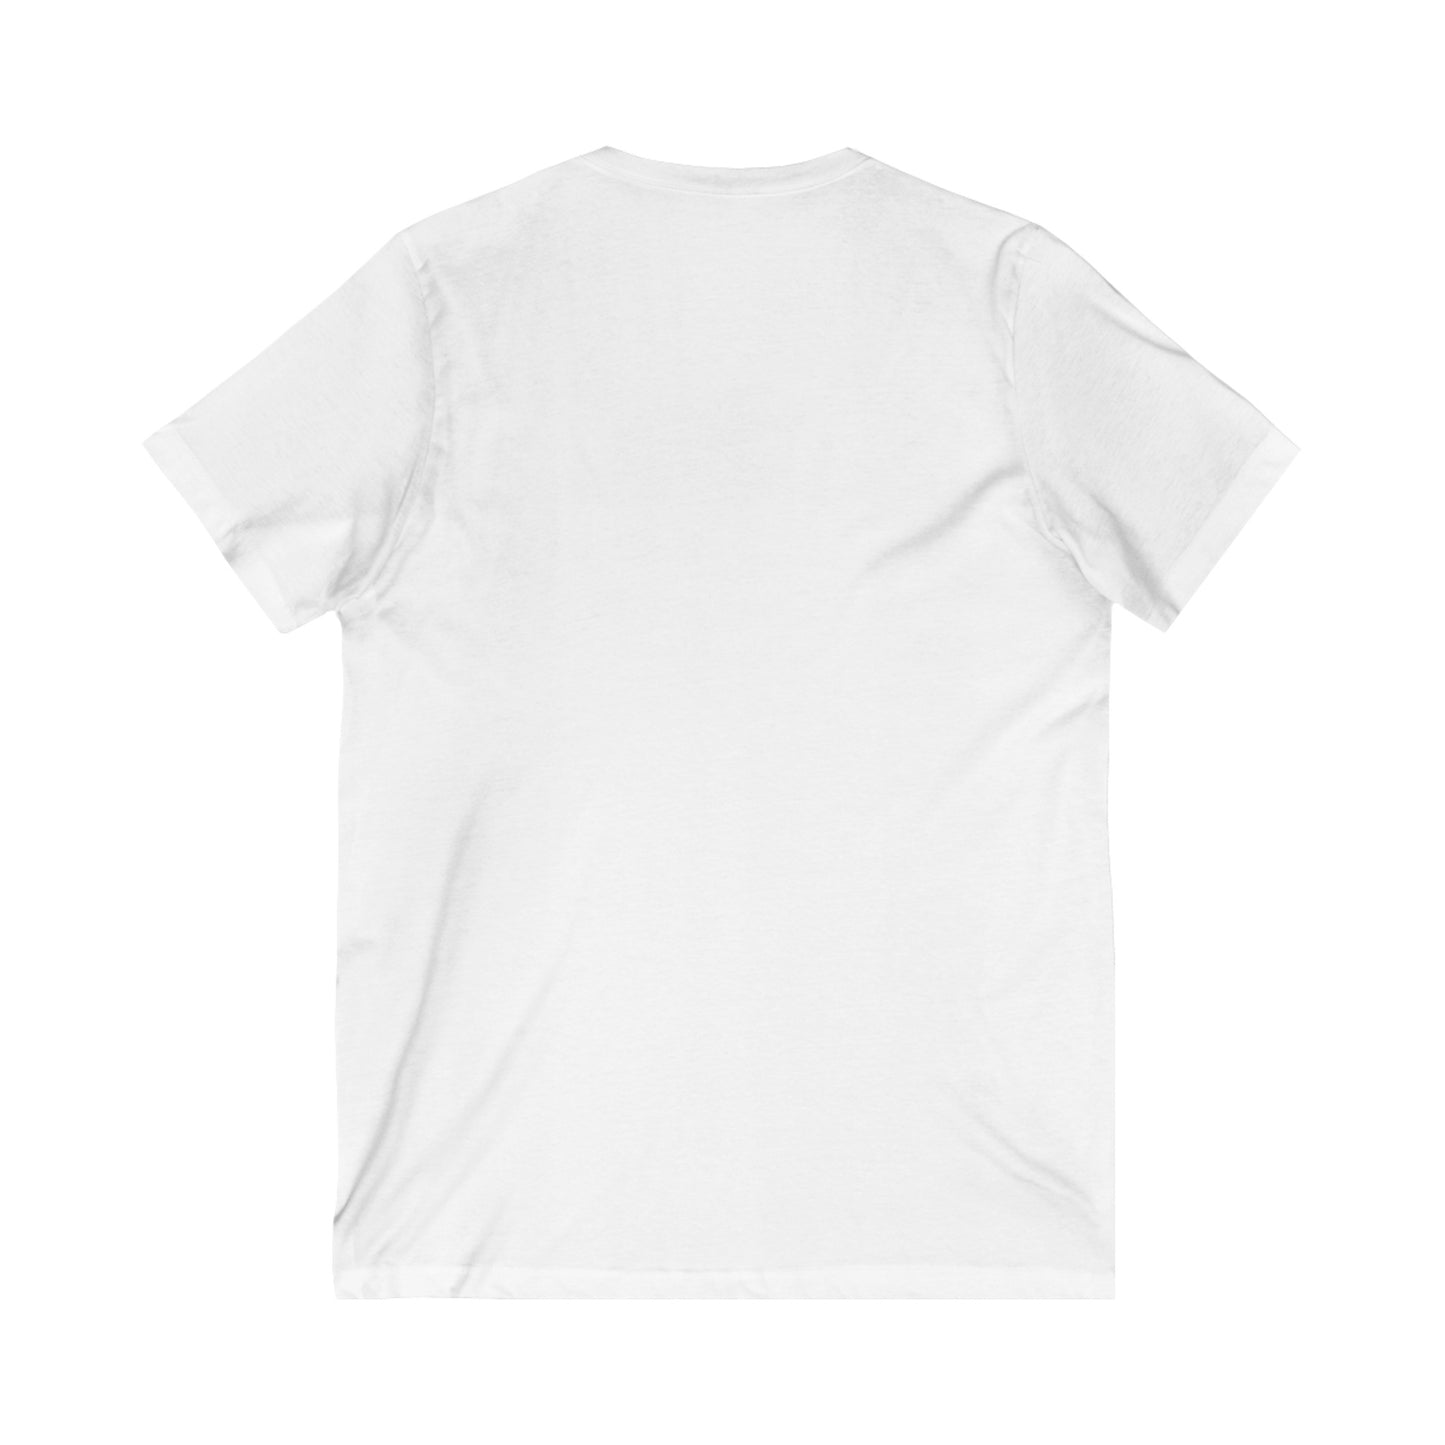 FLW "Manual" T-Shirt  V-Neck